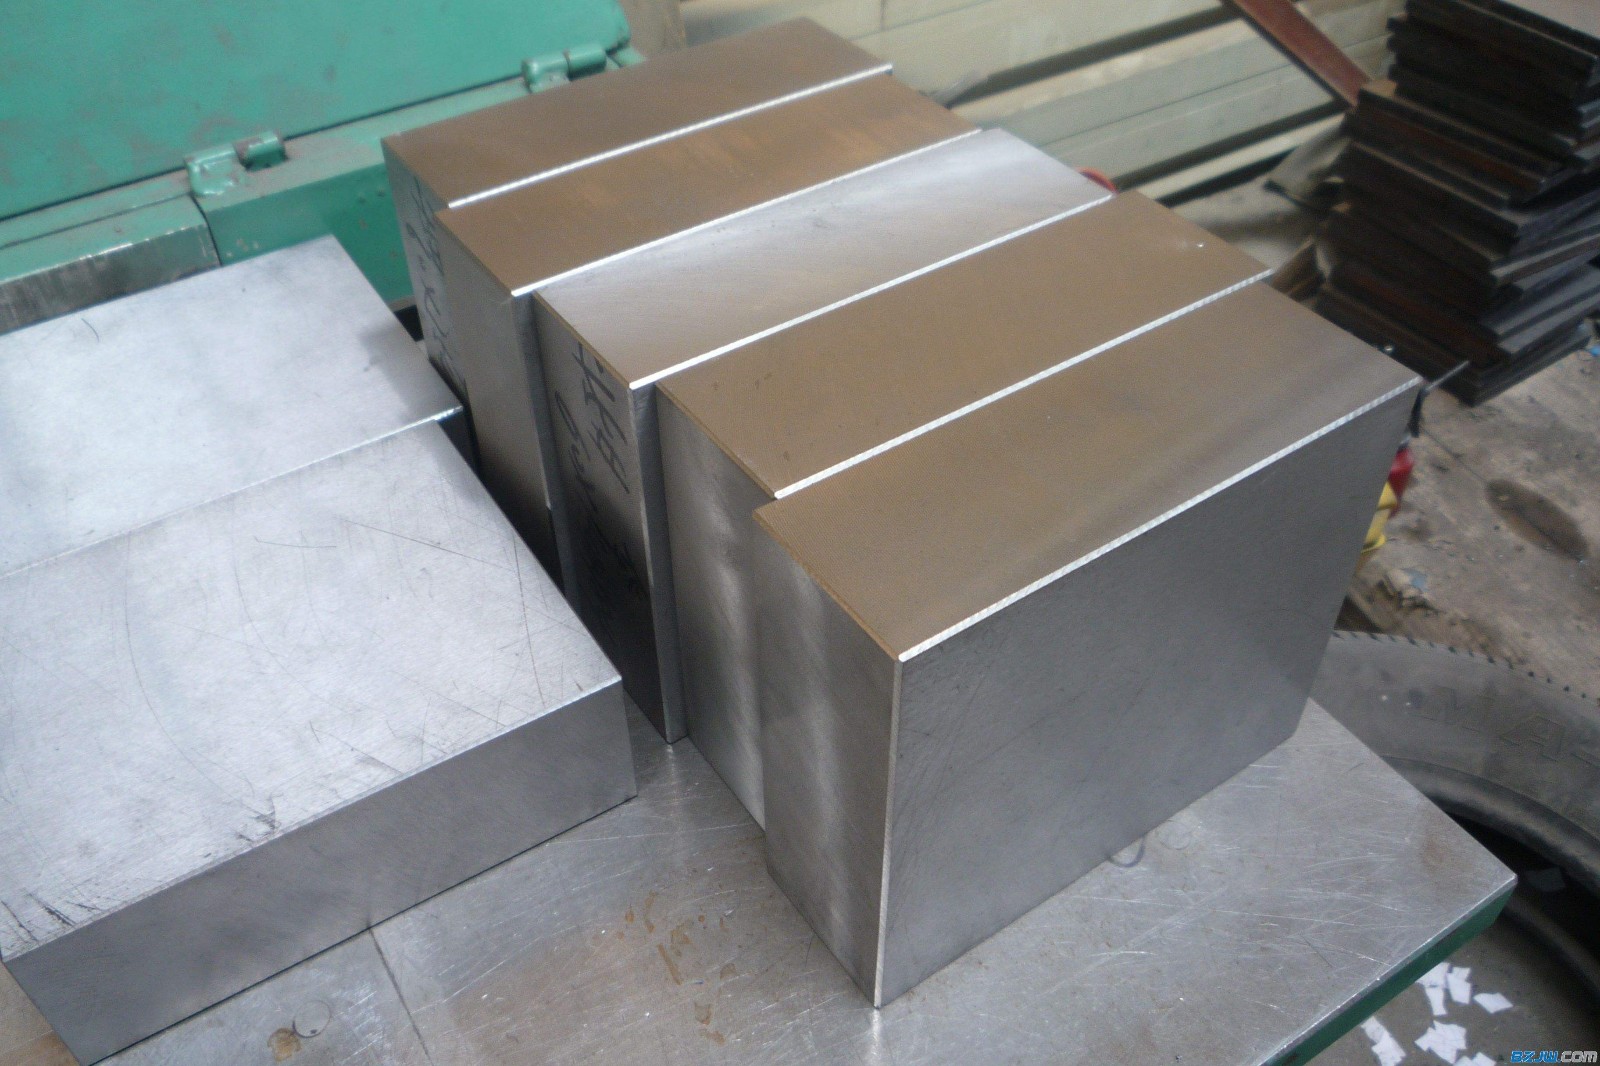 aluminum block